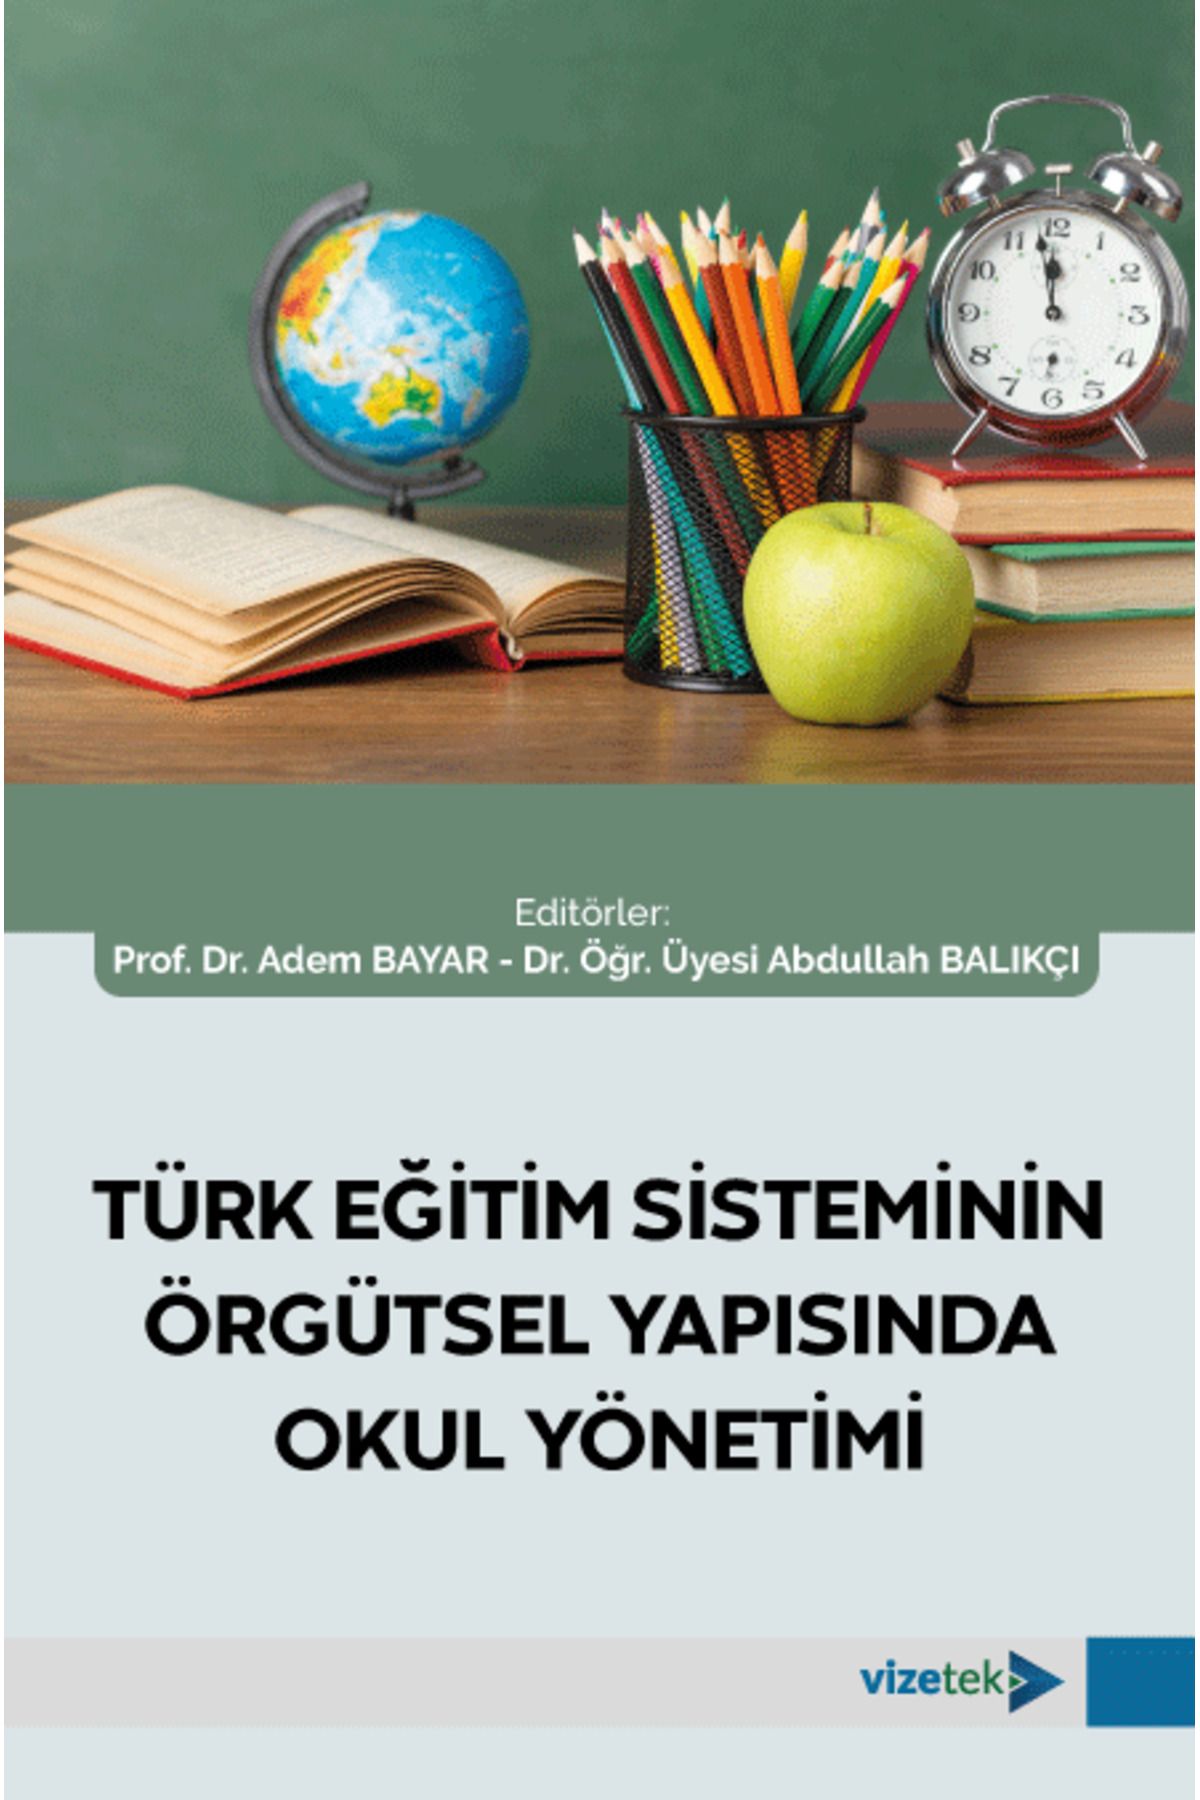 Vizetek Yayıncılık Türk Eğitim Sisteminin Örgütsel Yapısında Okul Yönetimi